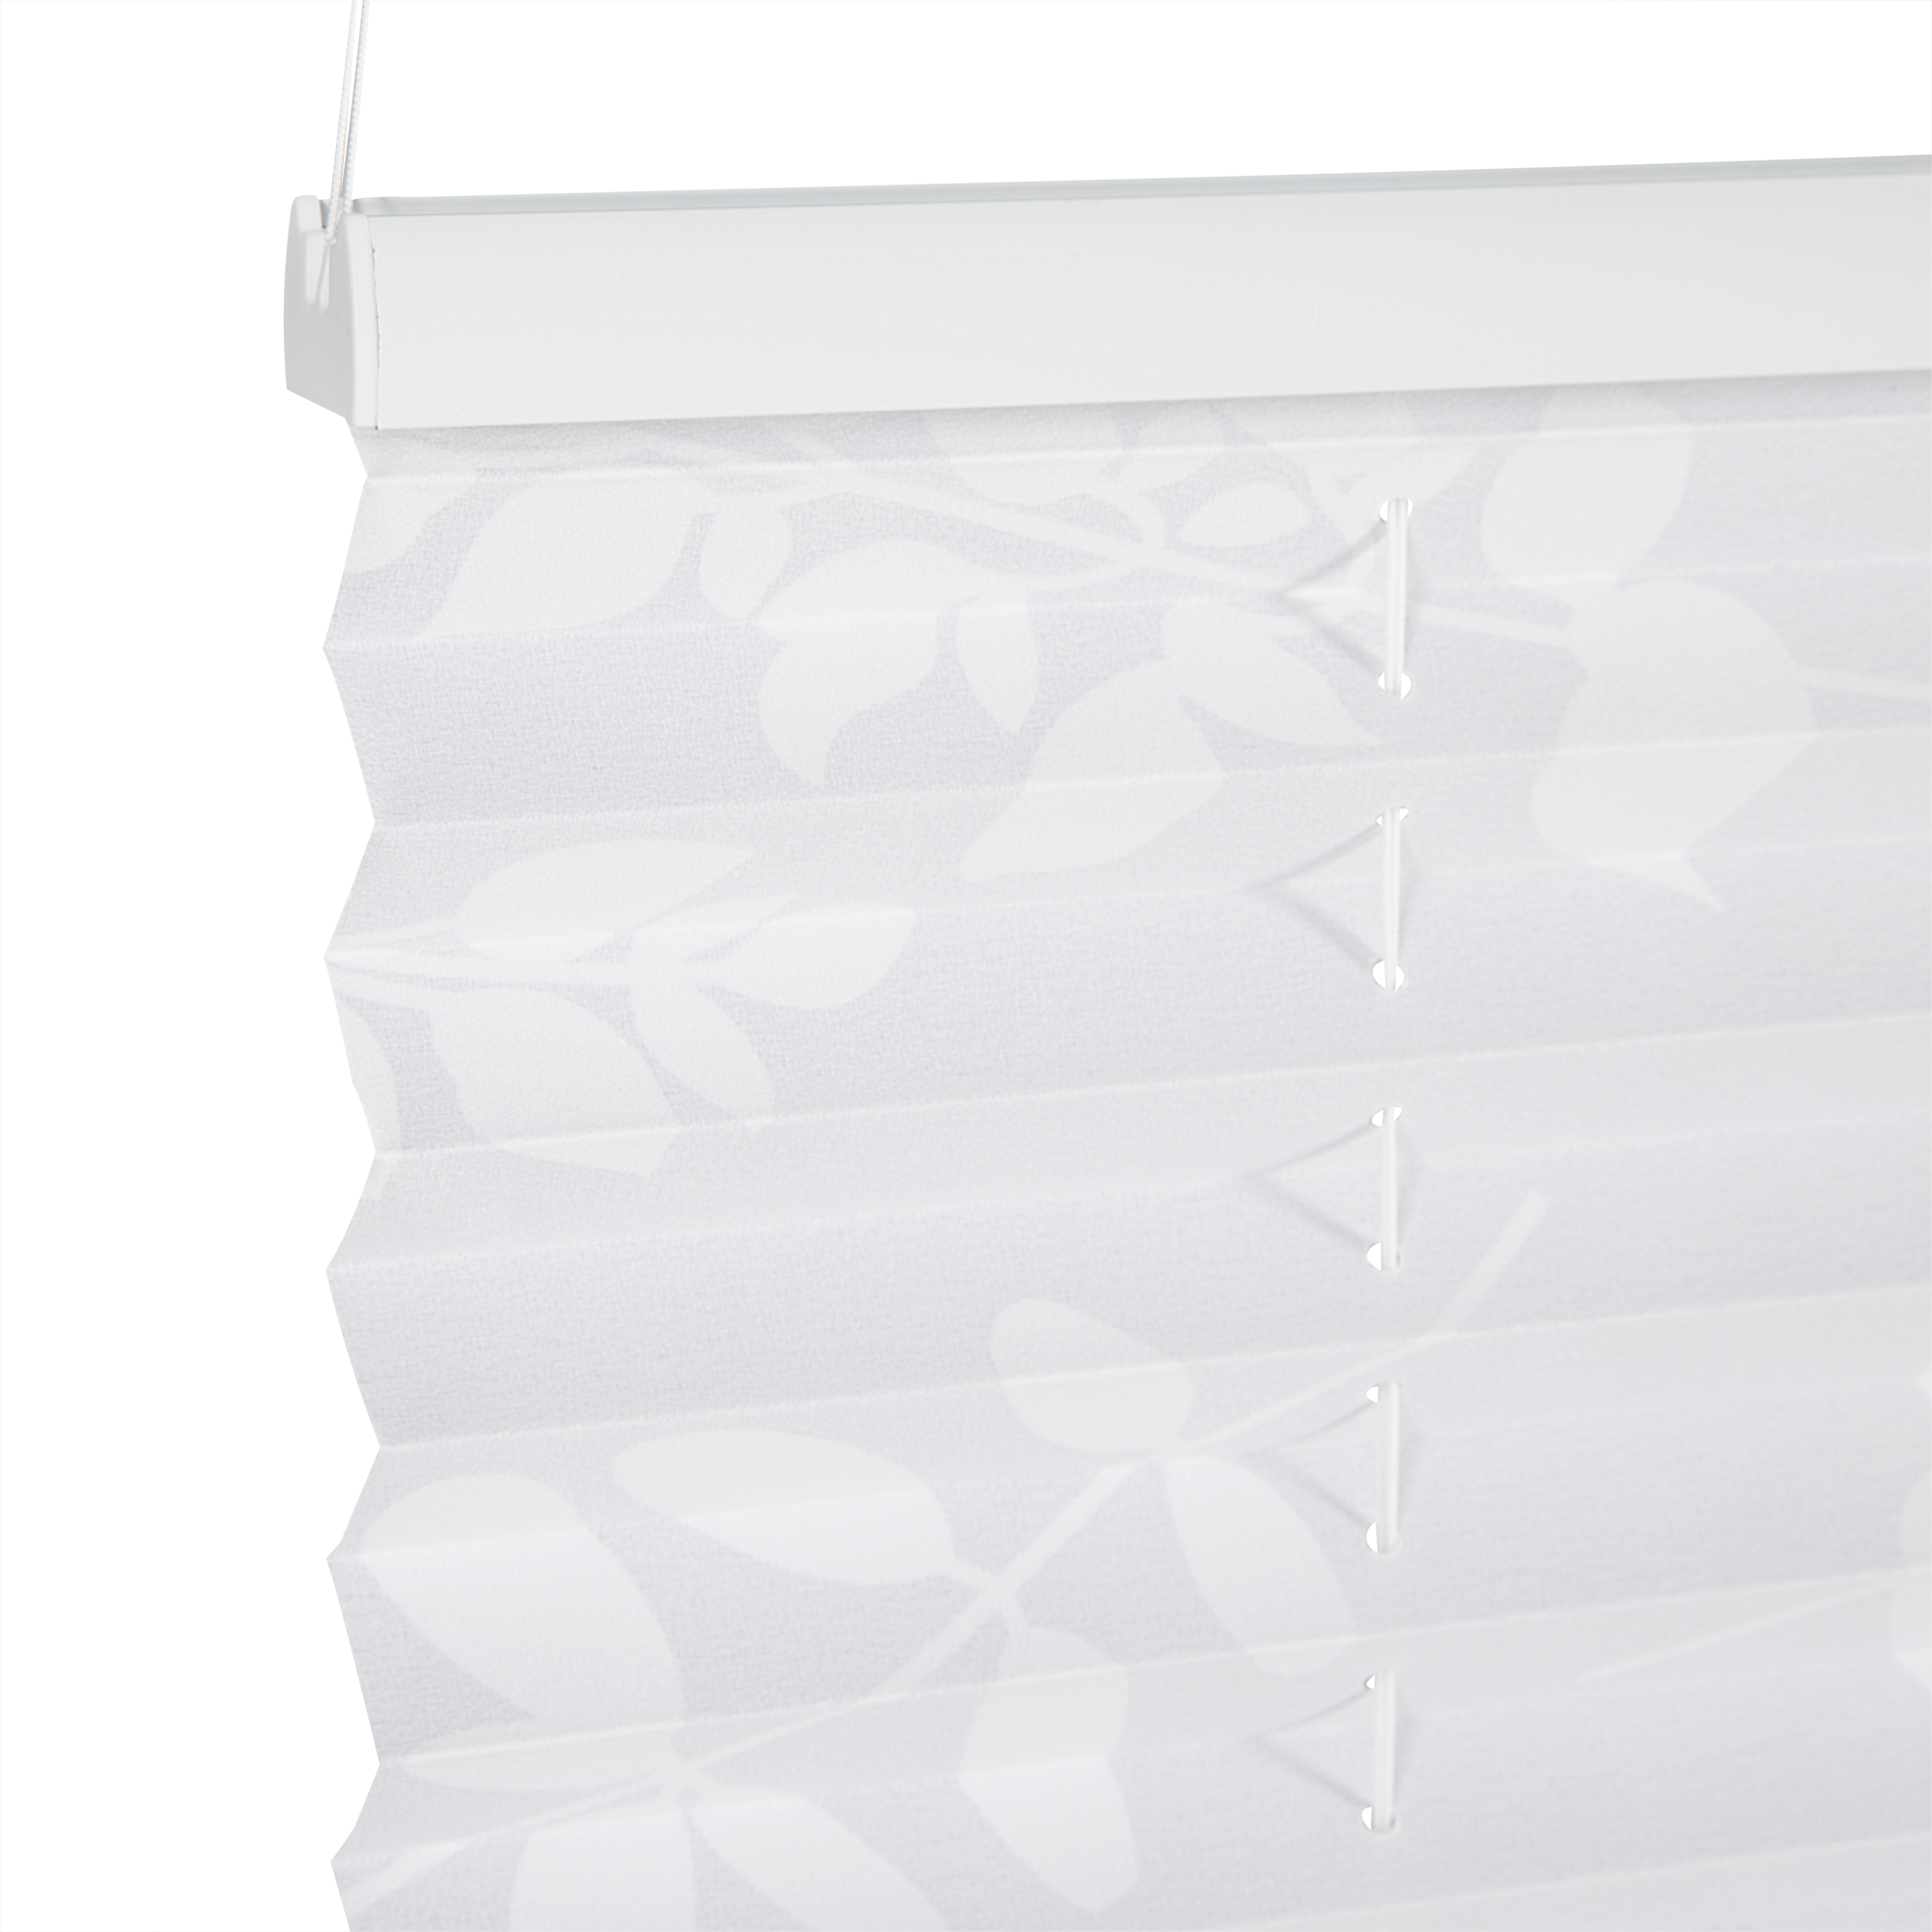 Tageslichtplissee 'Blüten' weiß 100 x 130 cm + product picture